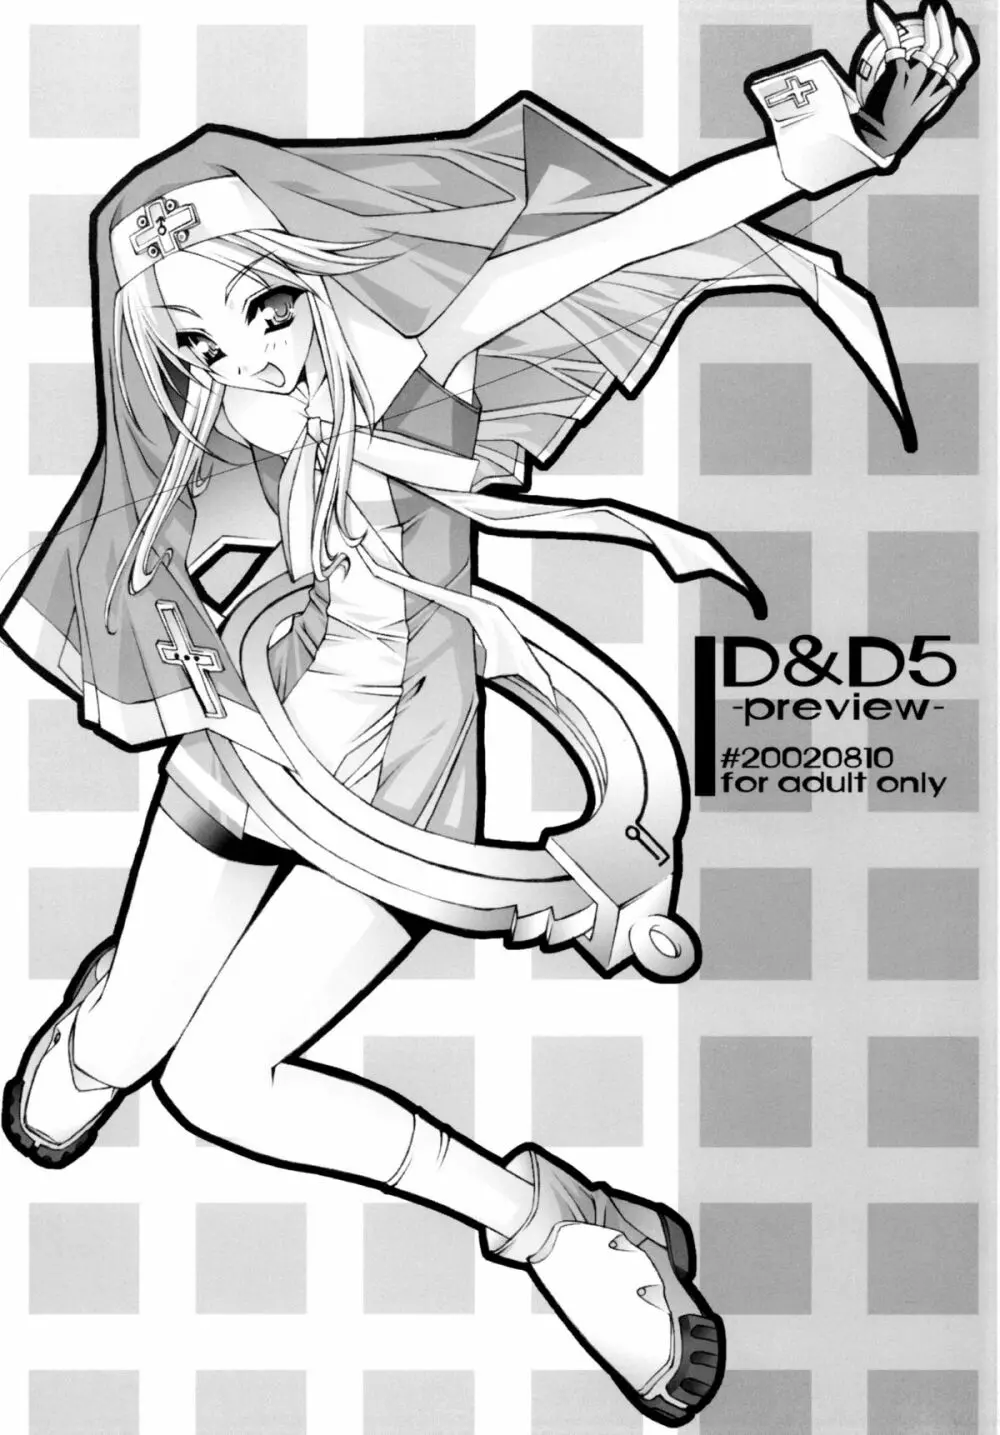 D&D 05 -preview-